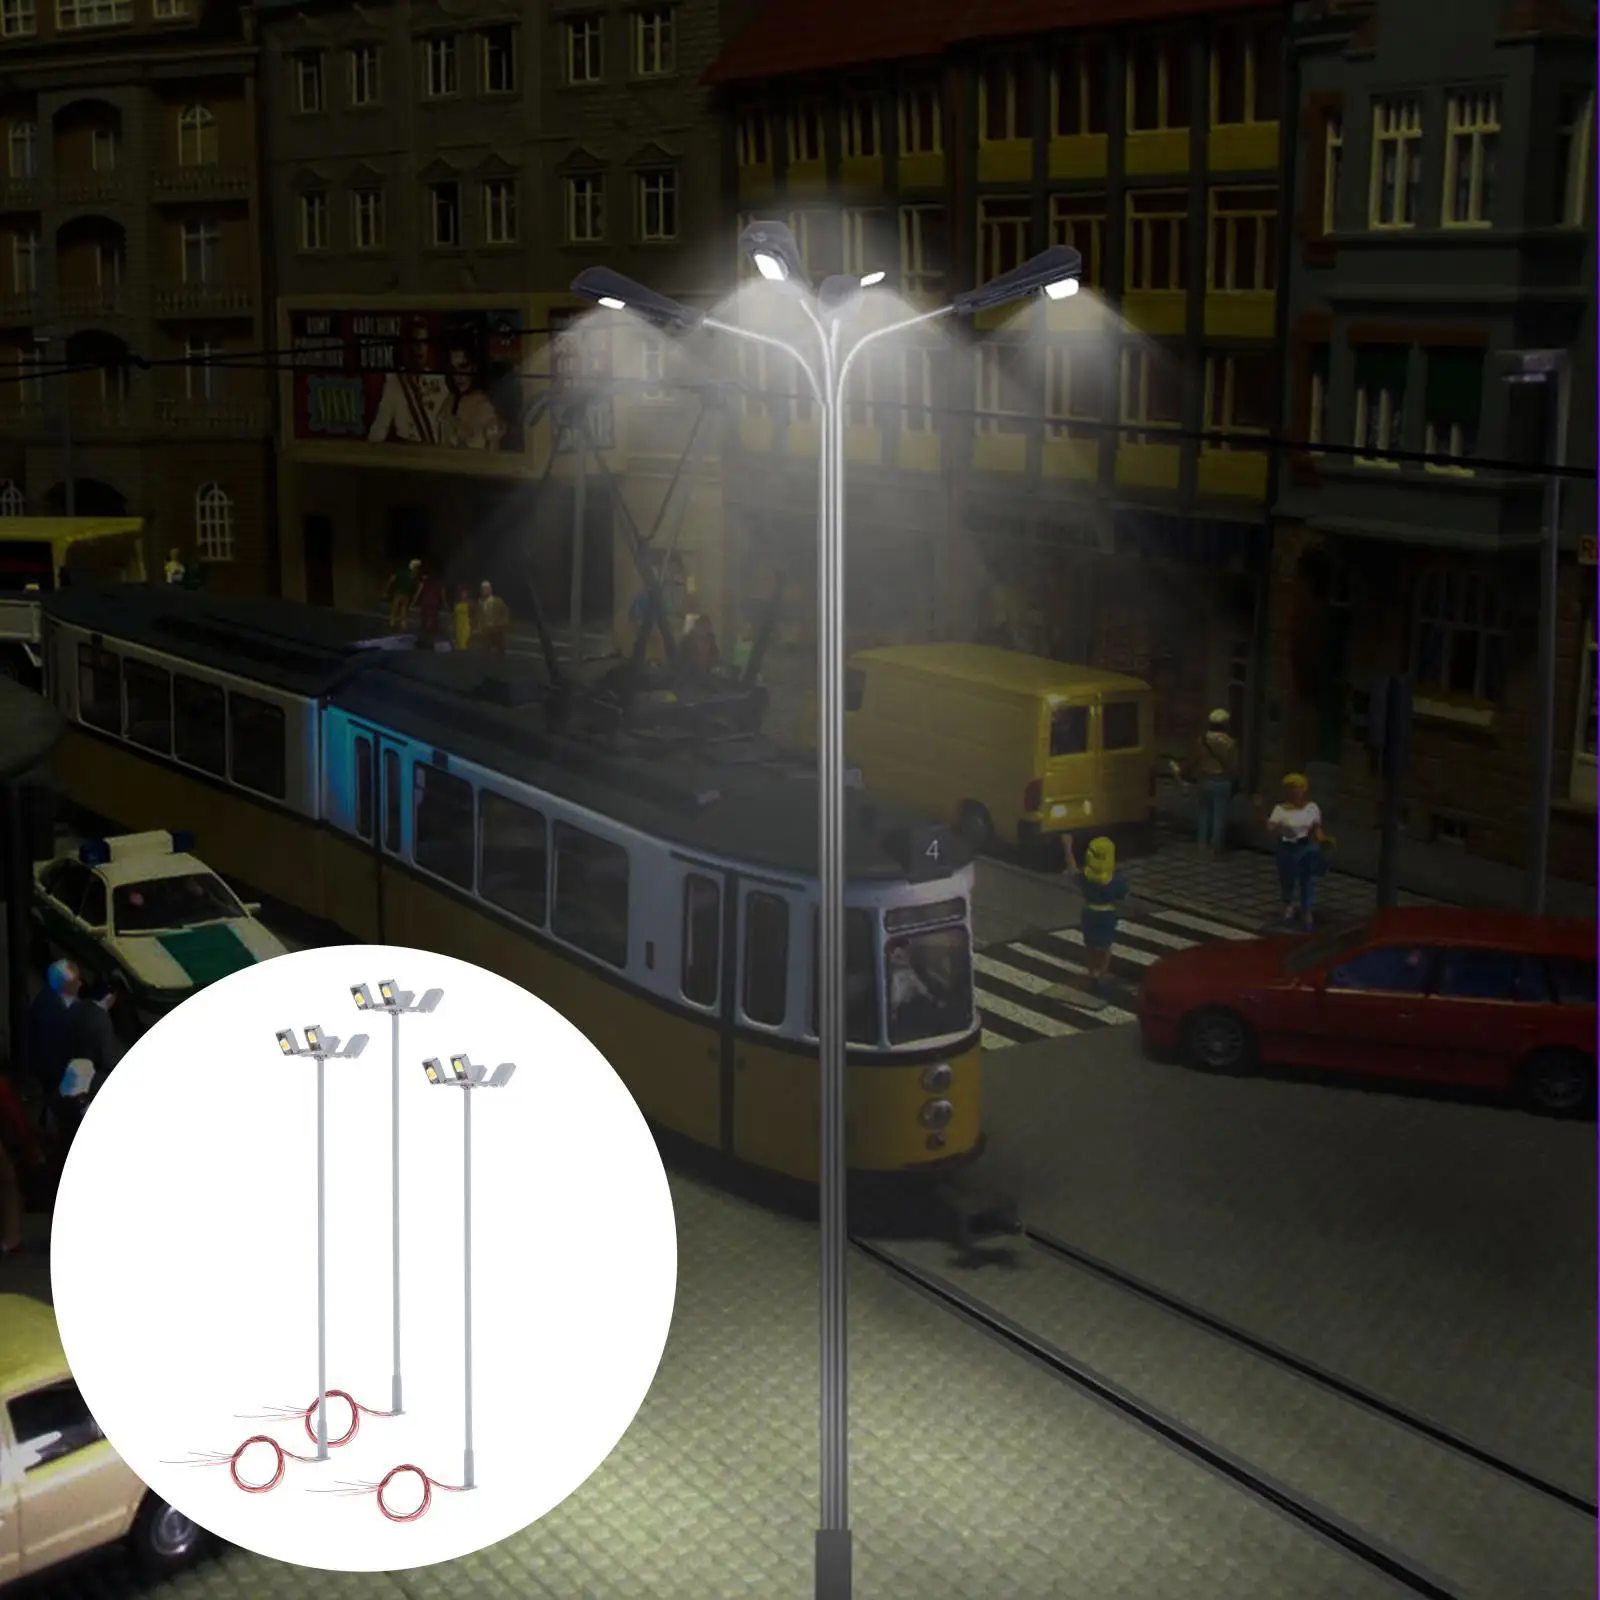 3x Miniature 1:87 Model Railway Scenery LED Light HO Gauge Lamppost 3V for